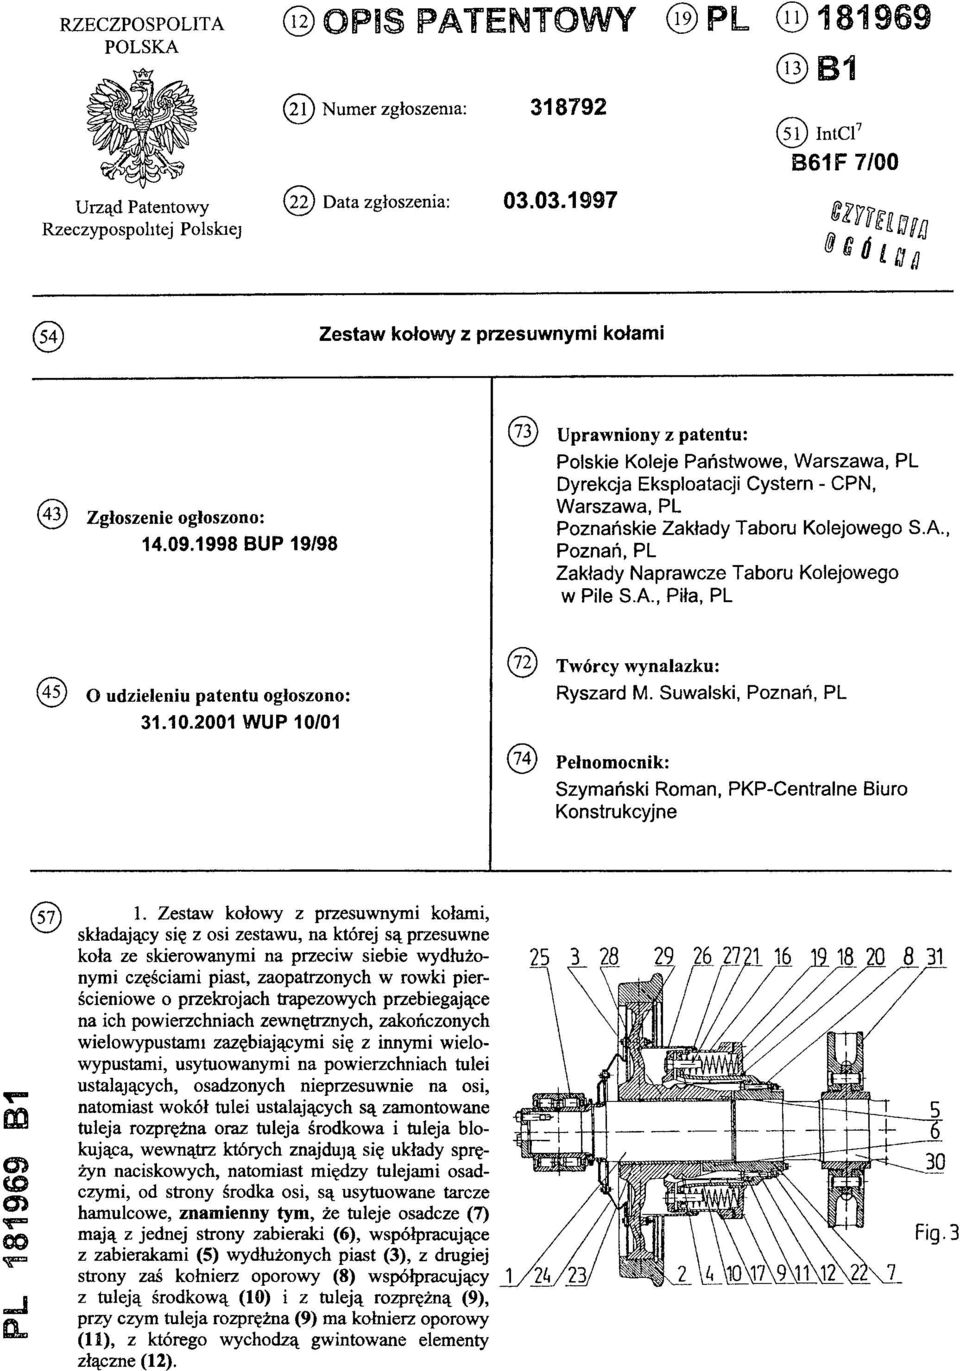 1998 BUP 19/98 (73) Uprawniony z patentu: Polskie Koleje Państwowe, Warszawa, PL Dyrekcja Eksploatacji Cystern - CPN, Warszawa, PL Poznańskie Zakłady Taboru Kolejowego S.A.